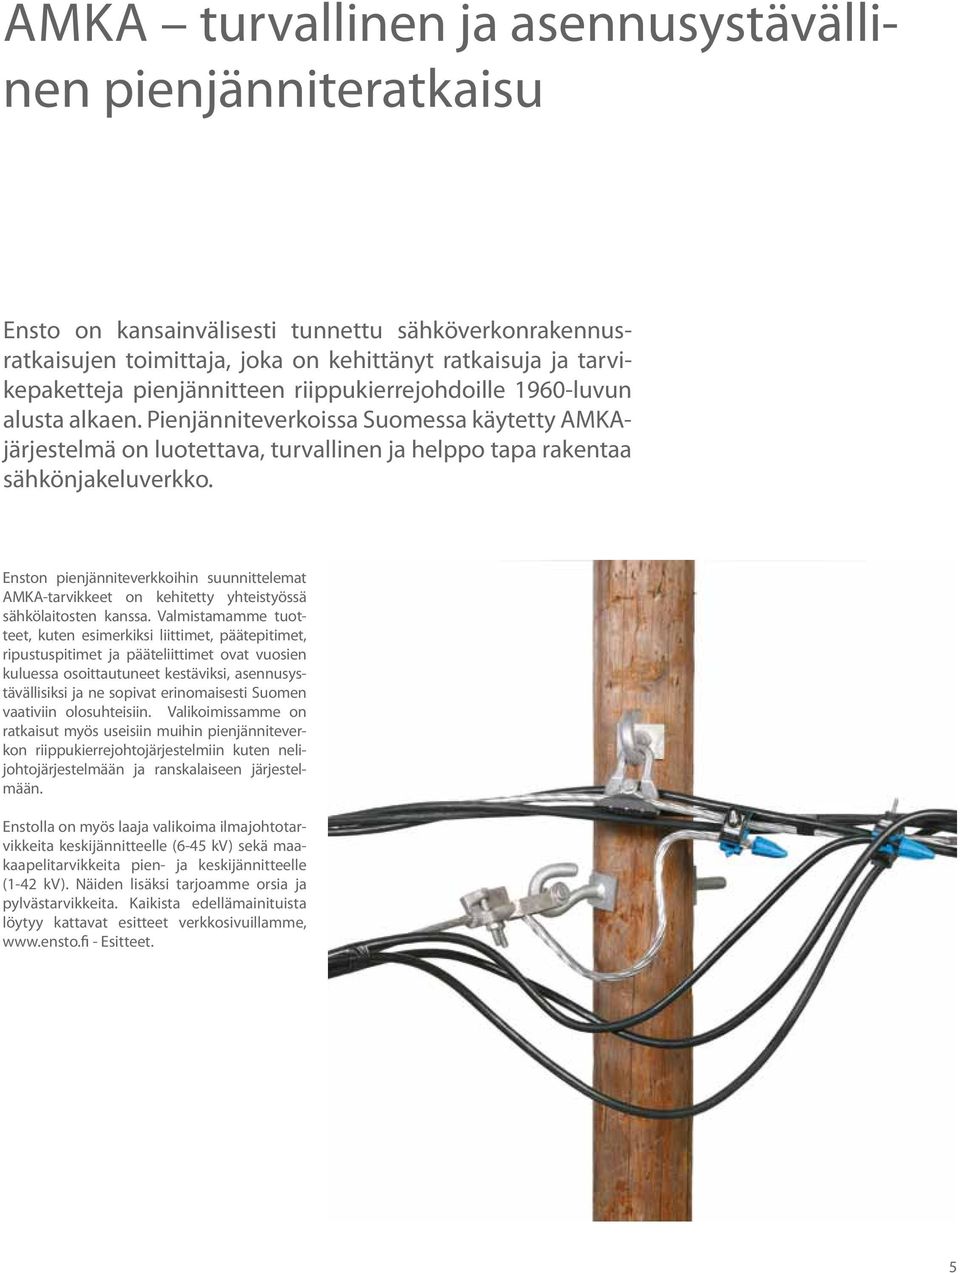 Enston pienjänniteverkkoihin suunnittelemat AMKA-tarvikkeet on kehitetty yhteistyössä sähkölaitosten kanssa.